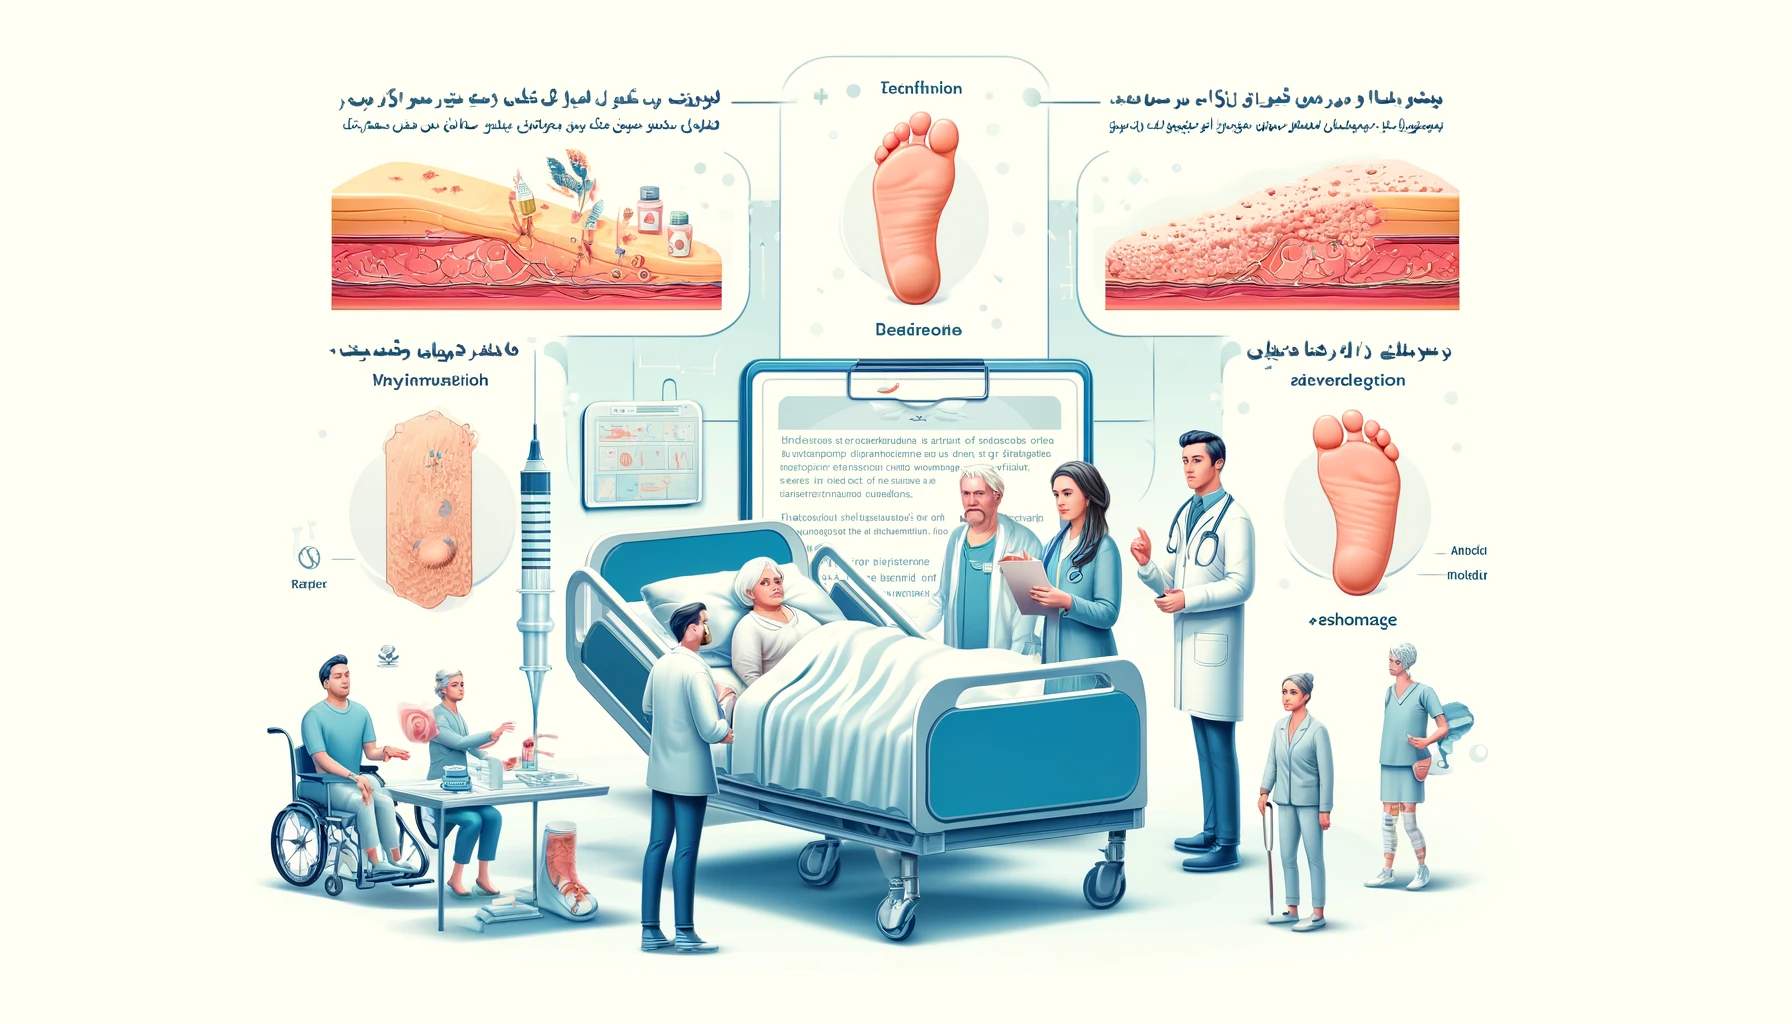 تصویر آموزشی از زخم بستر شامل تعریف، انواع و مراحل آن در کلینیک زخم پاشنه تهران.